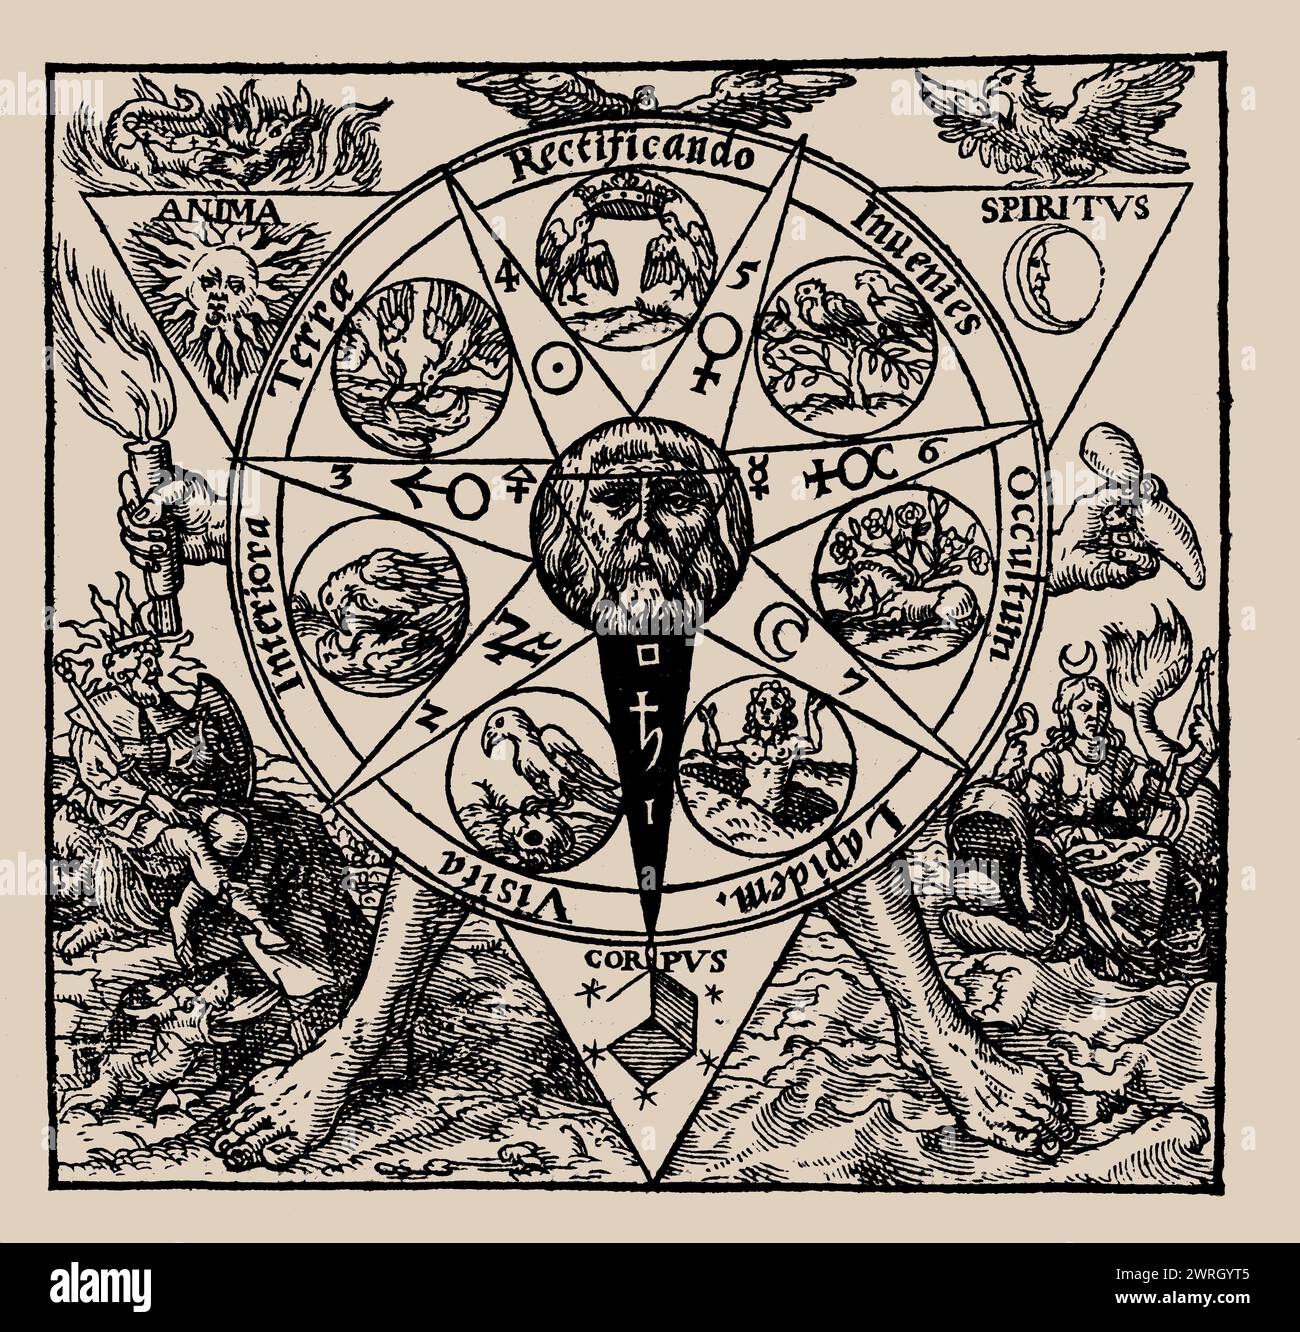 Azoth, Sive Aureliae Occultae Philosophorum... by Basilius Valentinus, 1613. Private Collection Stock Photo